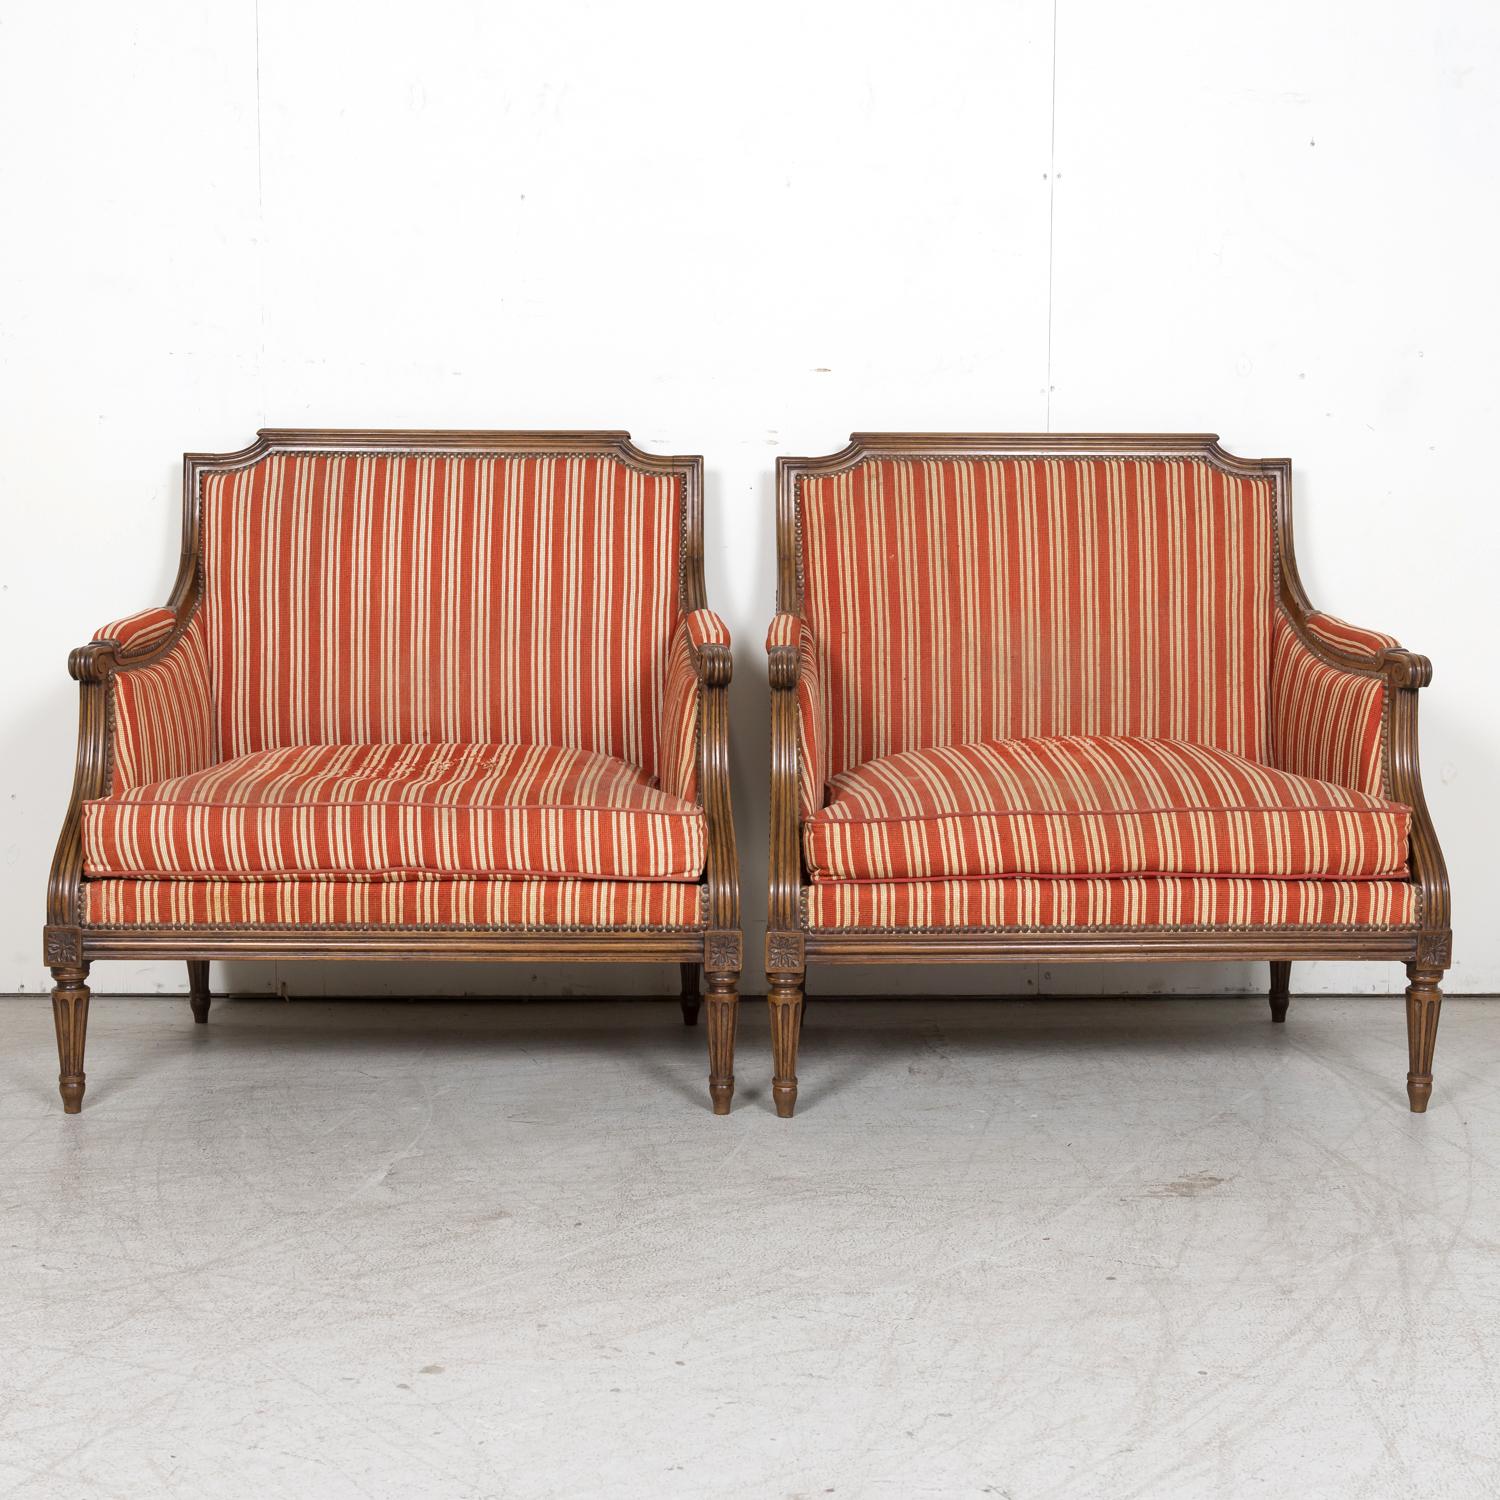 Ein feines Paar von geschnitzten gepolsterten Sesseln im Stil von Louis XVI, oft als 